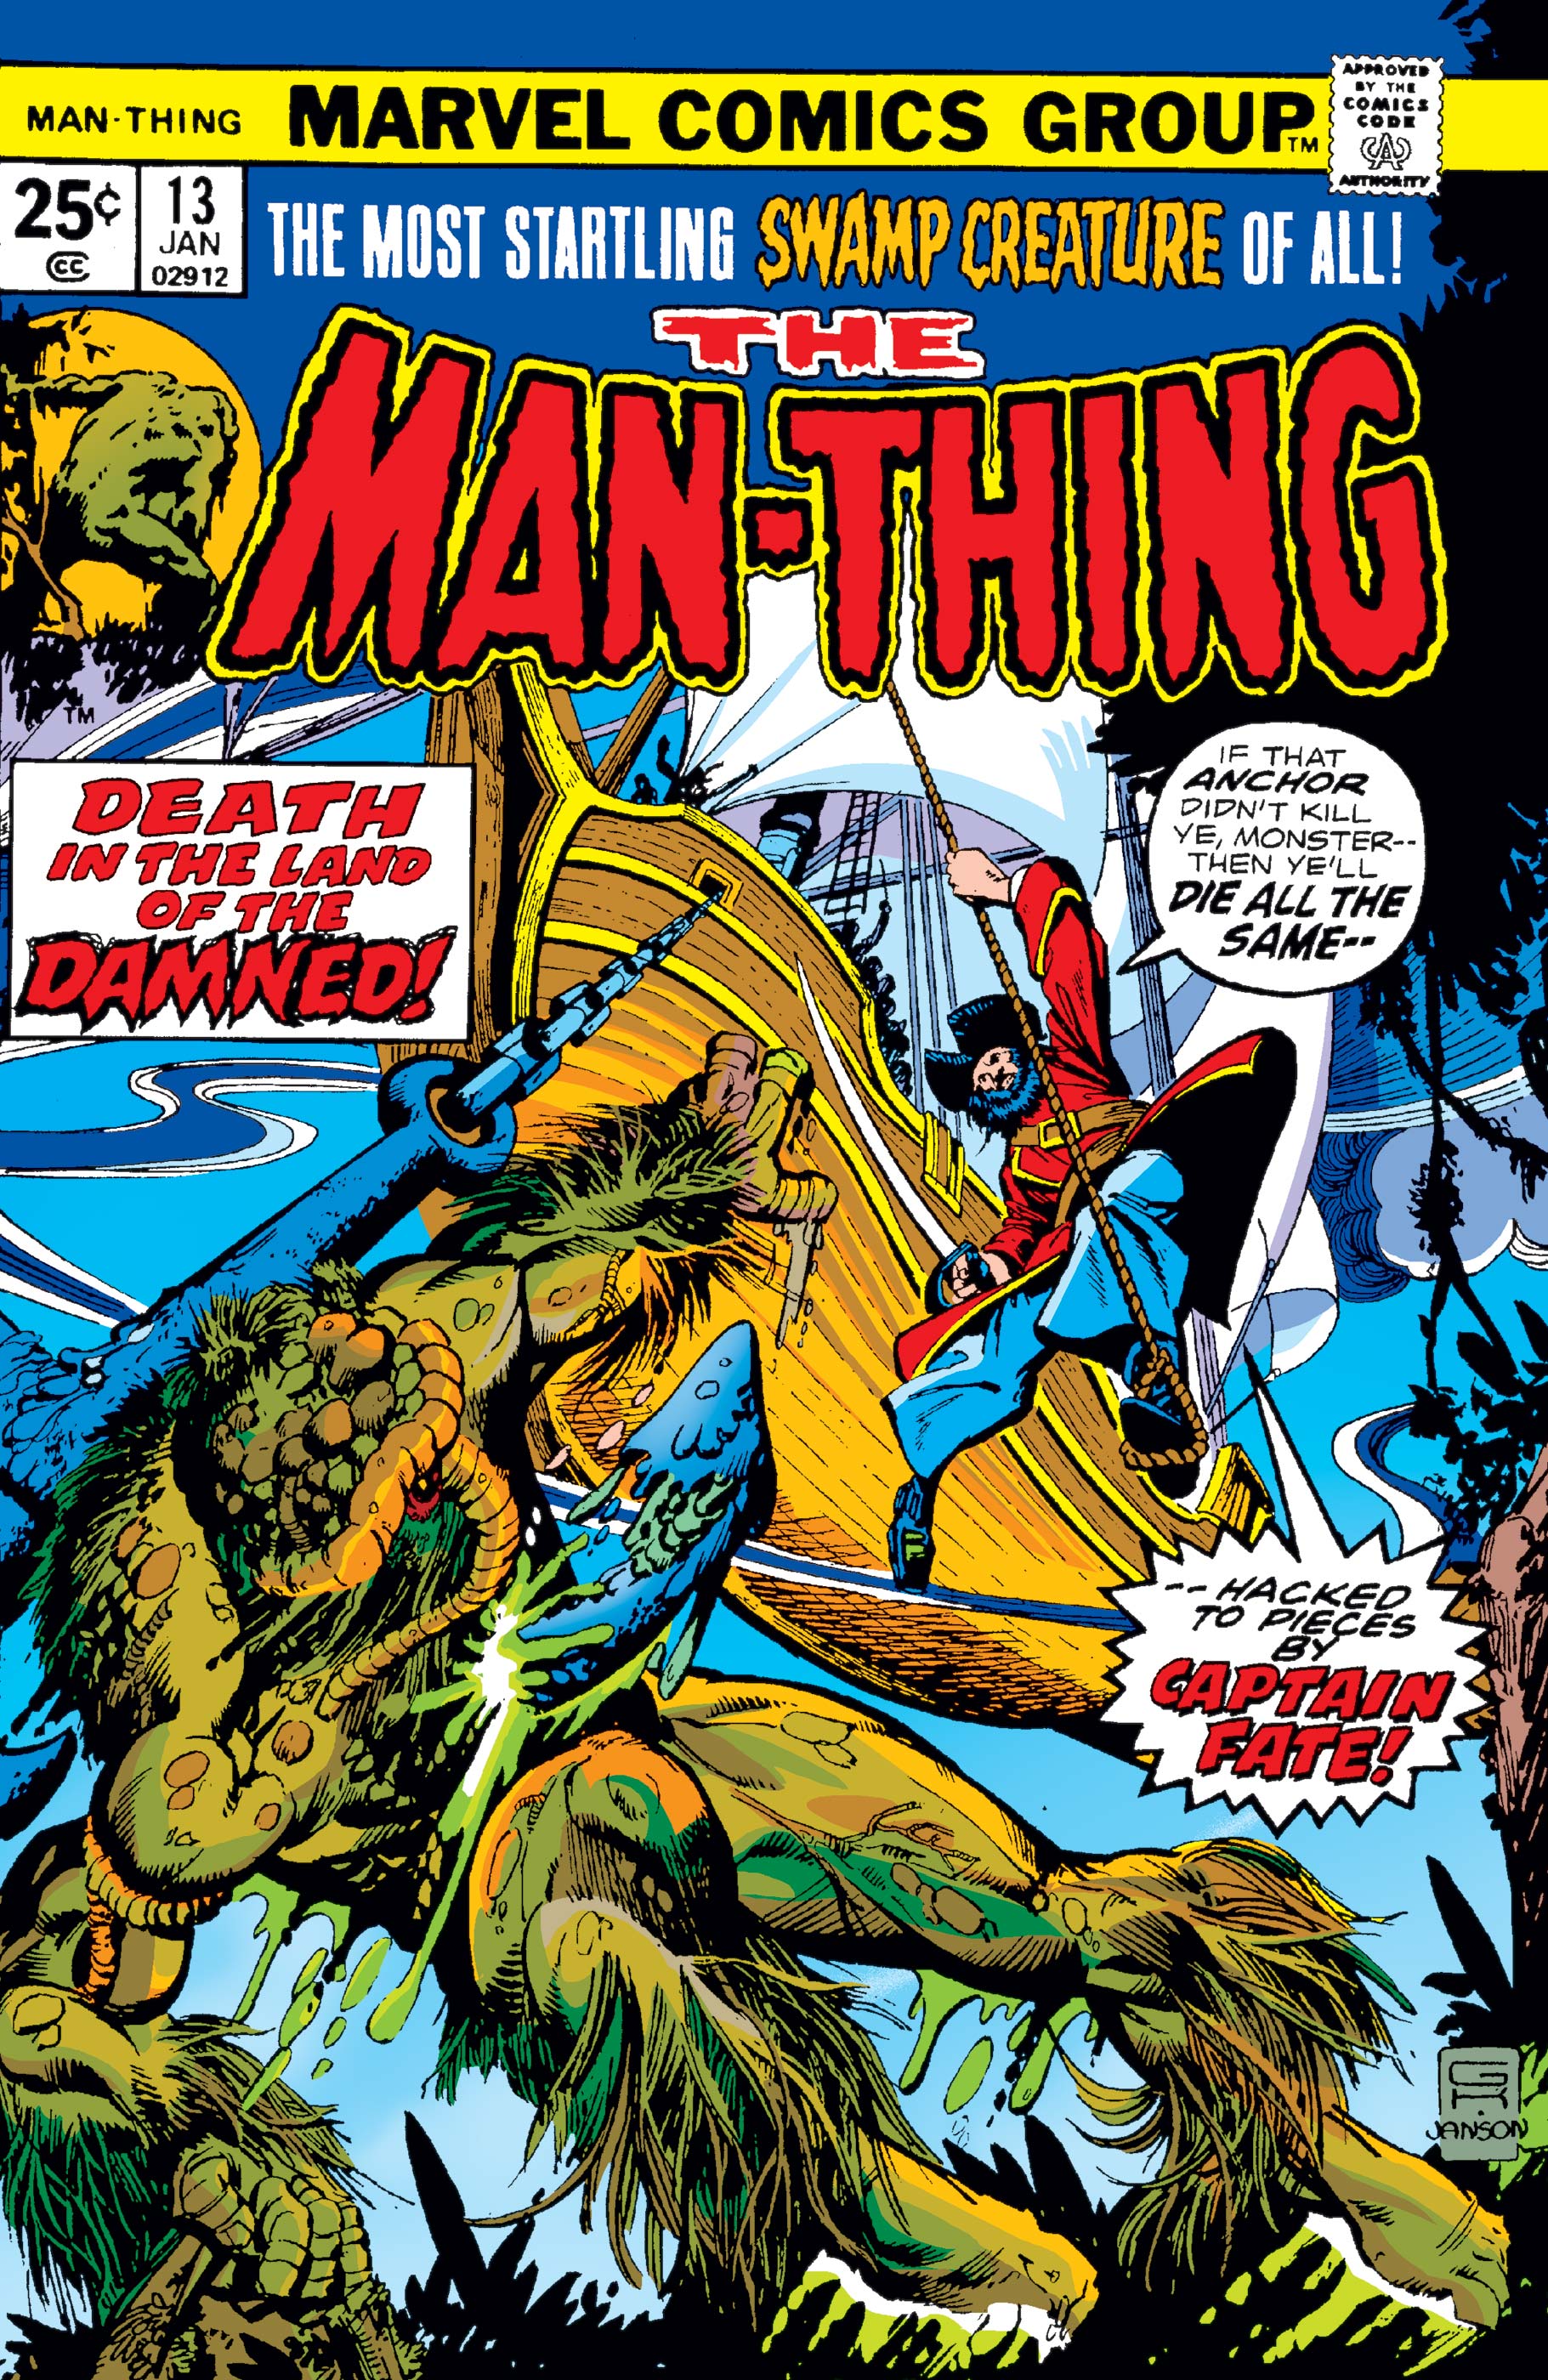 Man-Thing (1974) #13